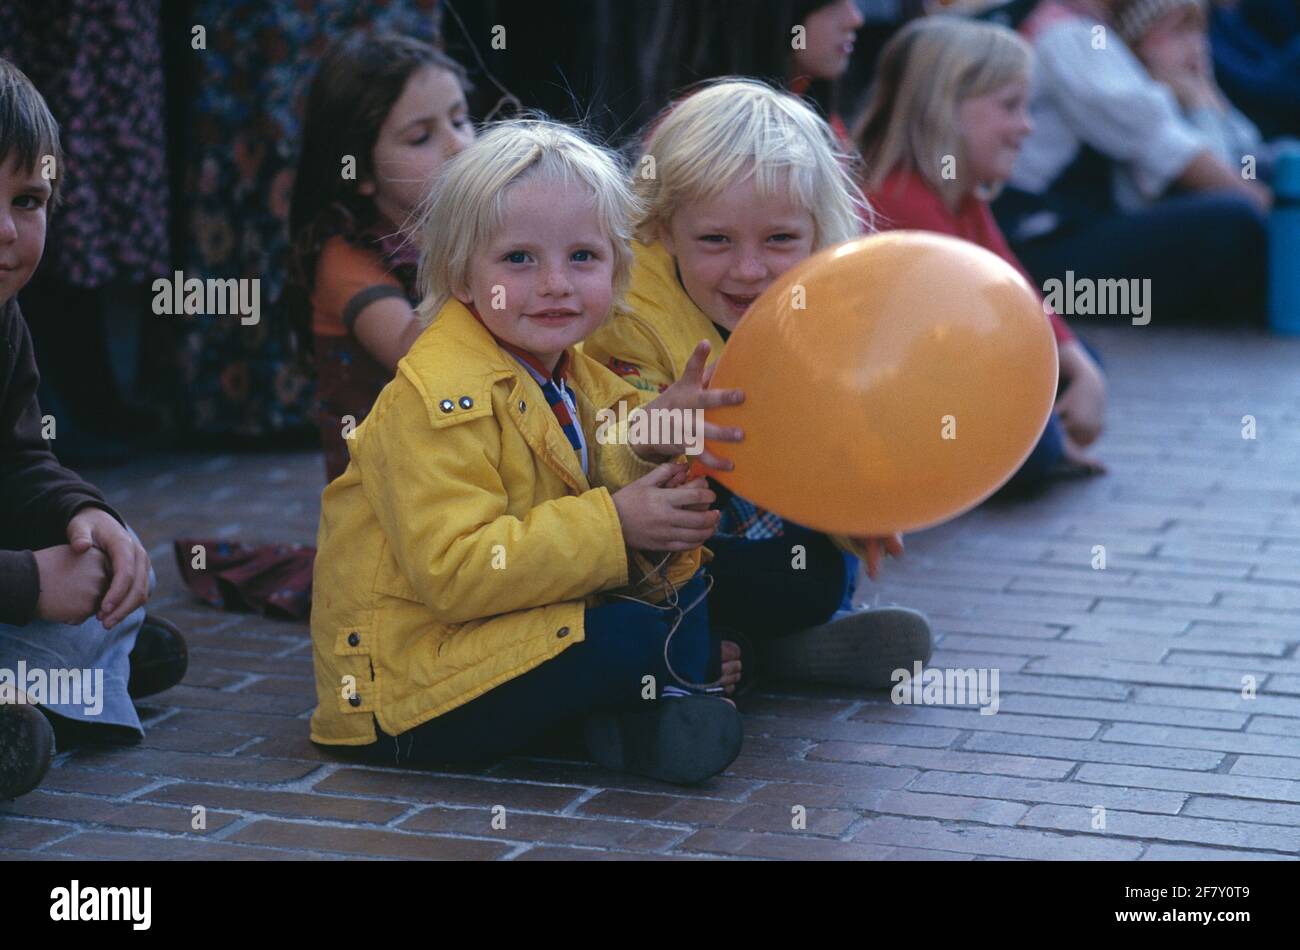 Grupo de niños sentados en el pavimento al aire libre. Niña y niño con globo. Foto de stock